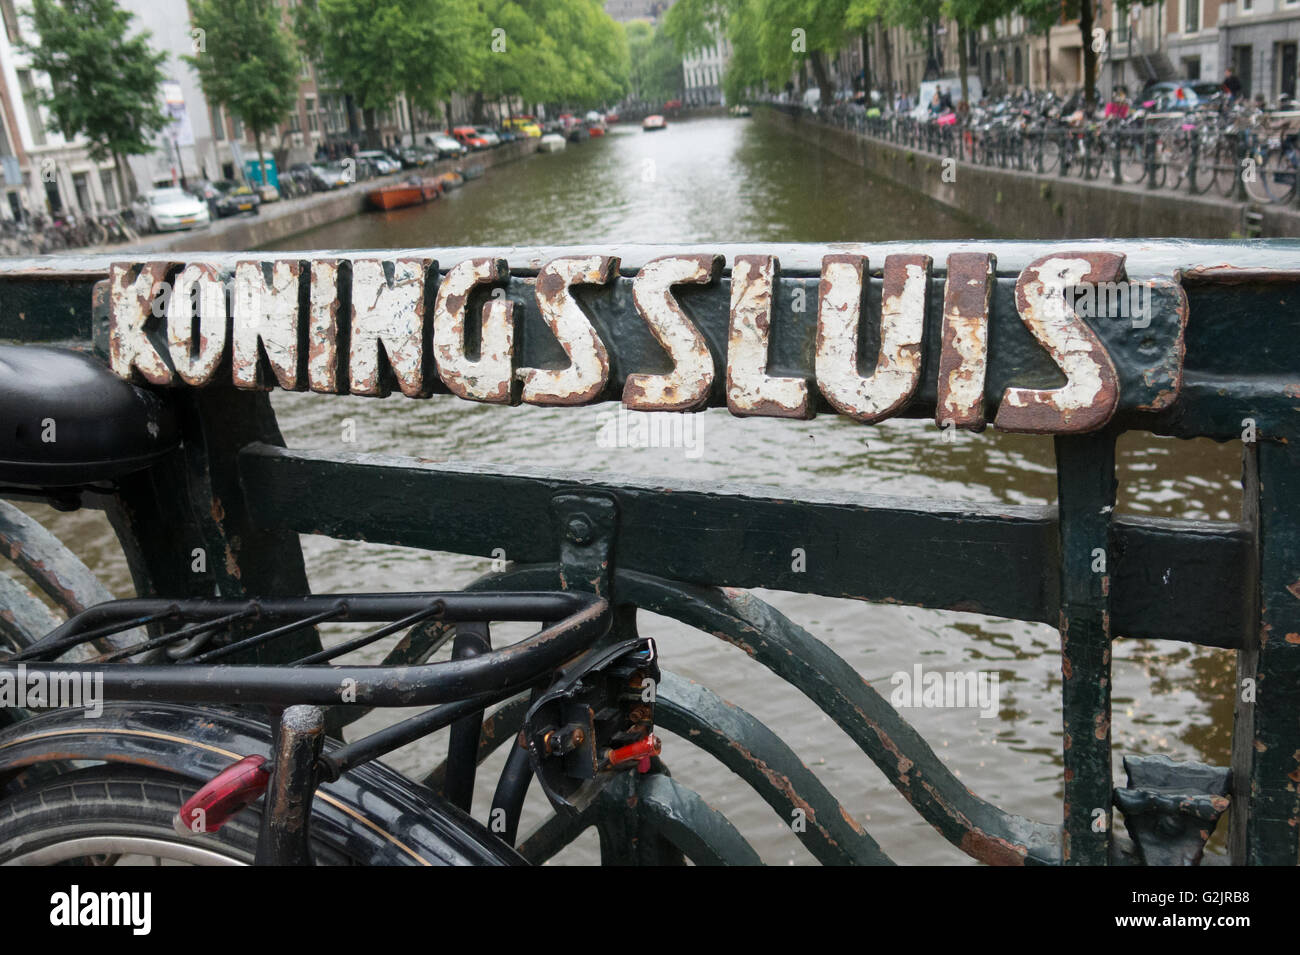 Brücke-Zeichen für Konings Sluis, Herengracht, Amsterdam Stockfoto